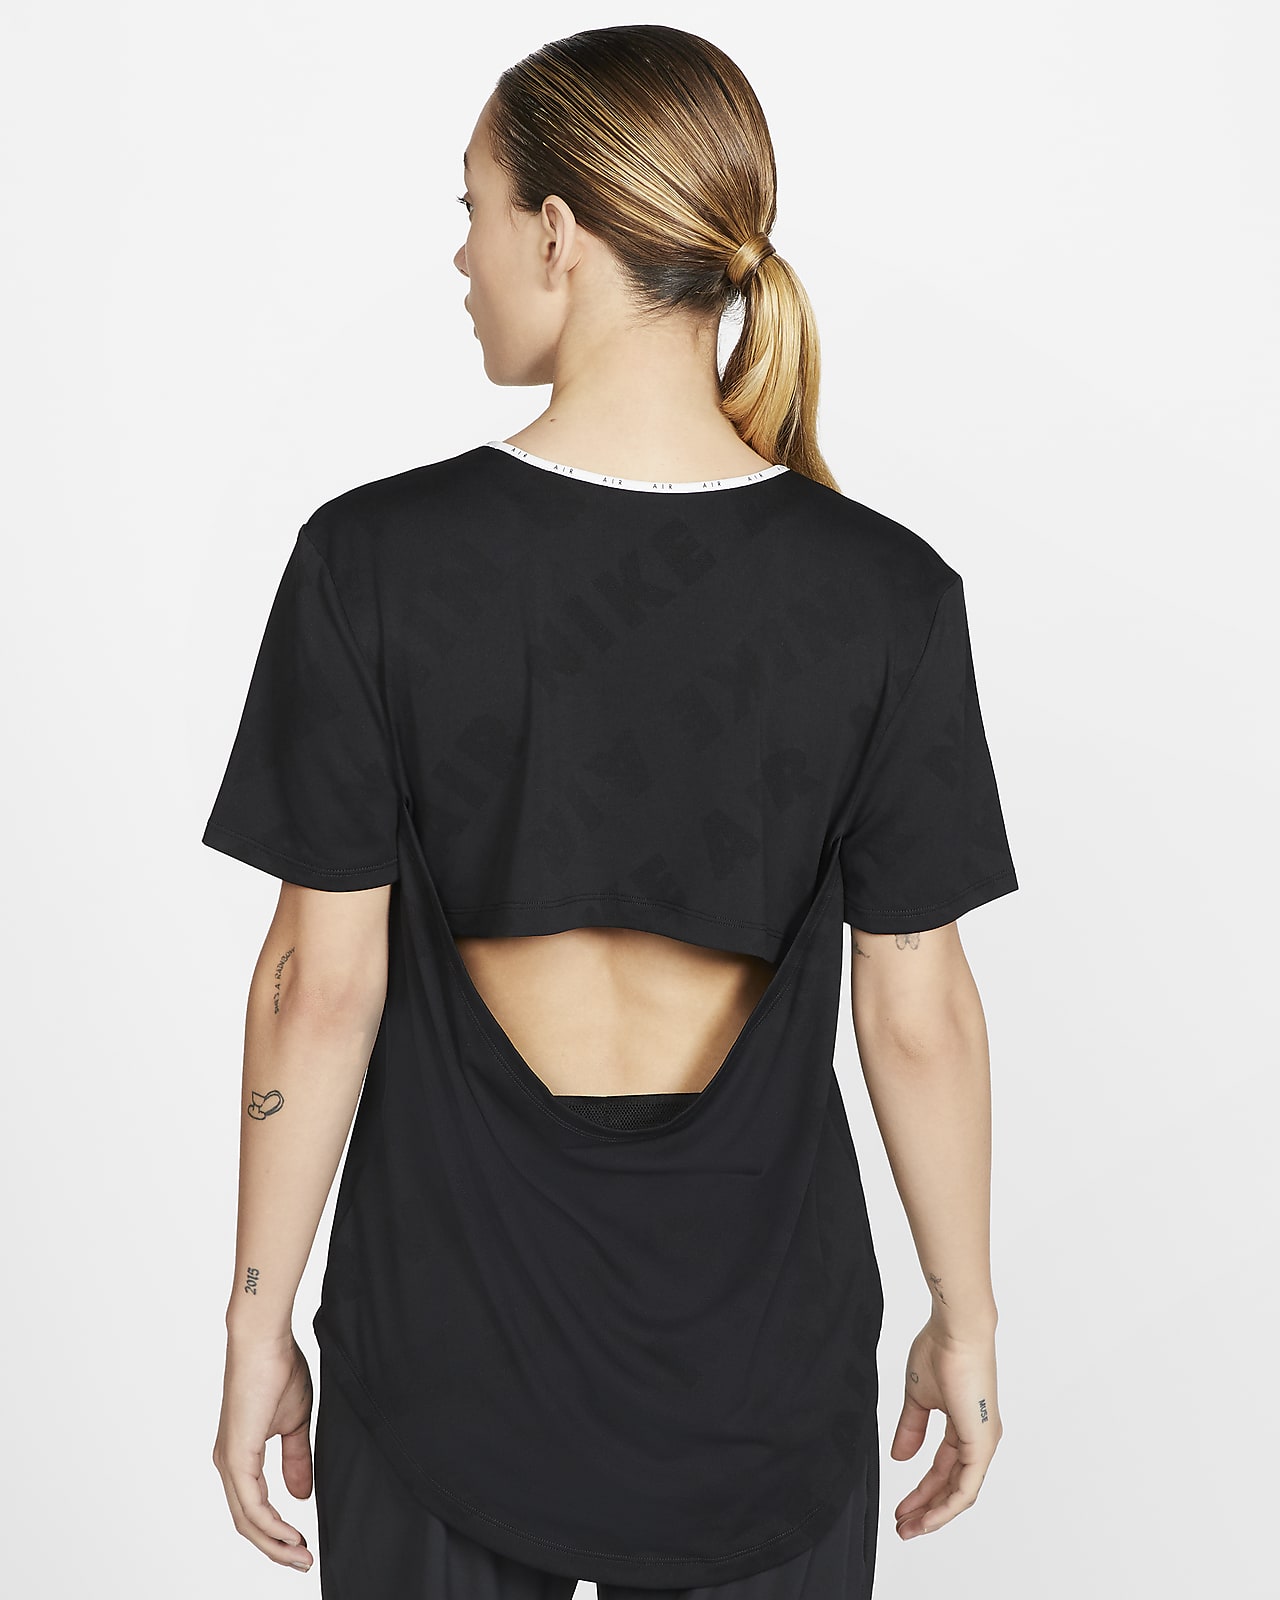 Nike Air Camiseta de - Mujer. Nike ES